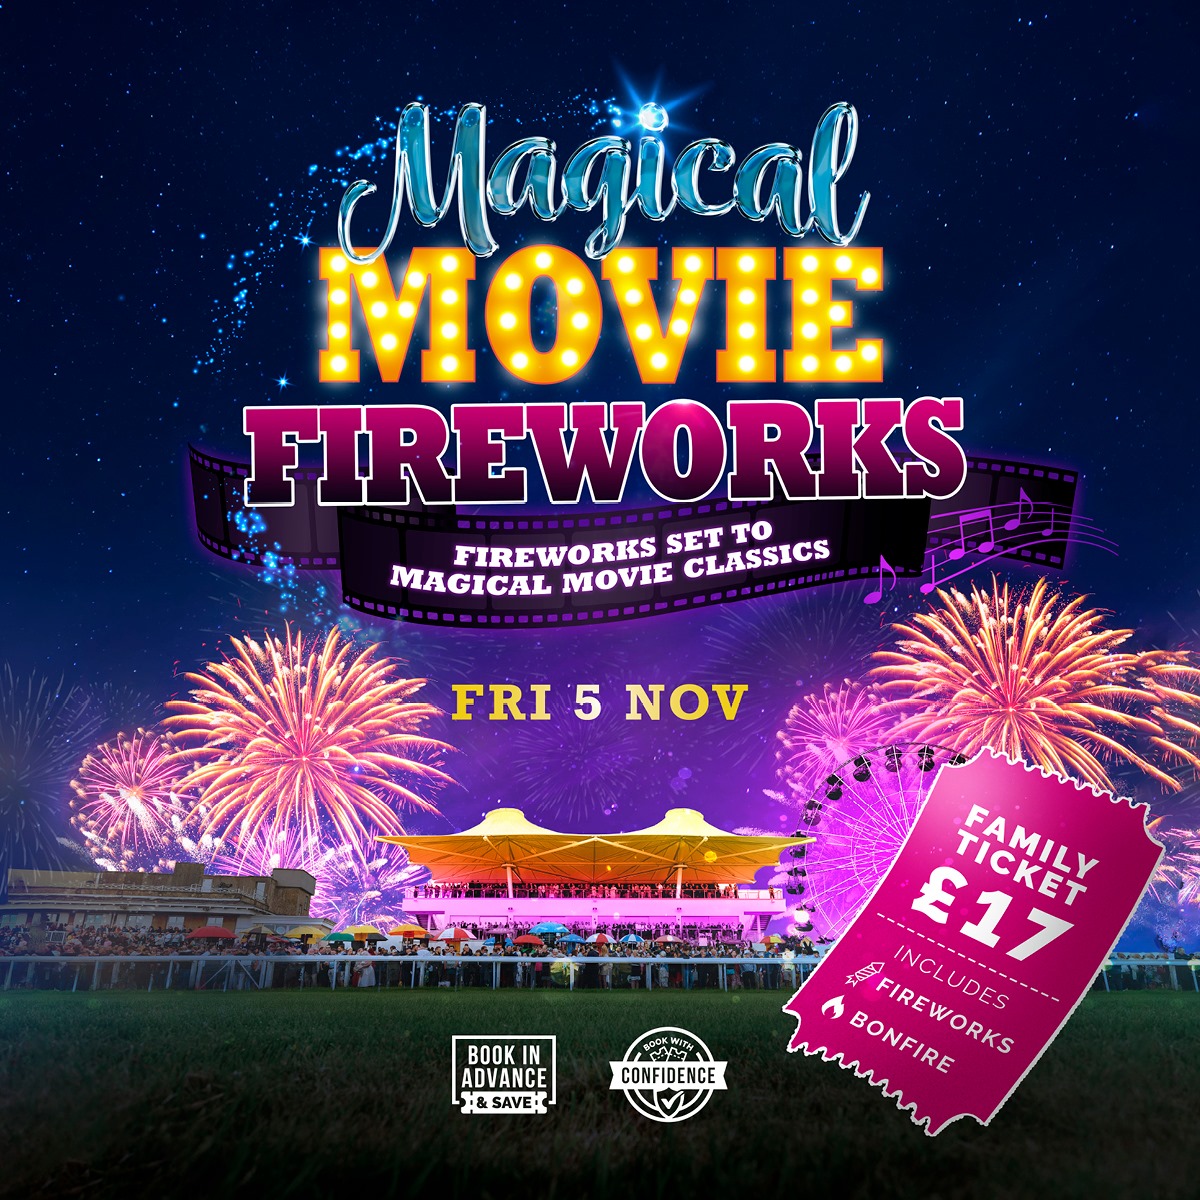 Bath Racecourse Magical Movie Fireworks 2021